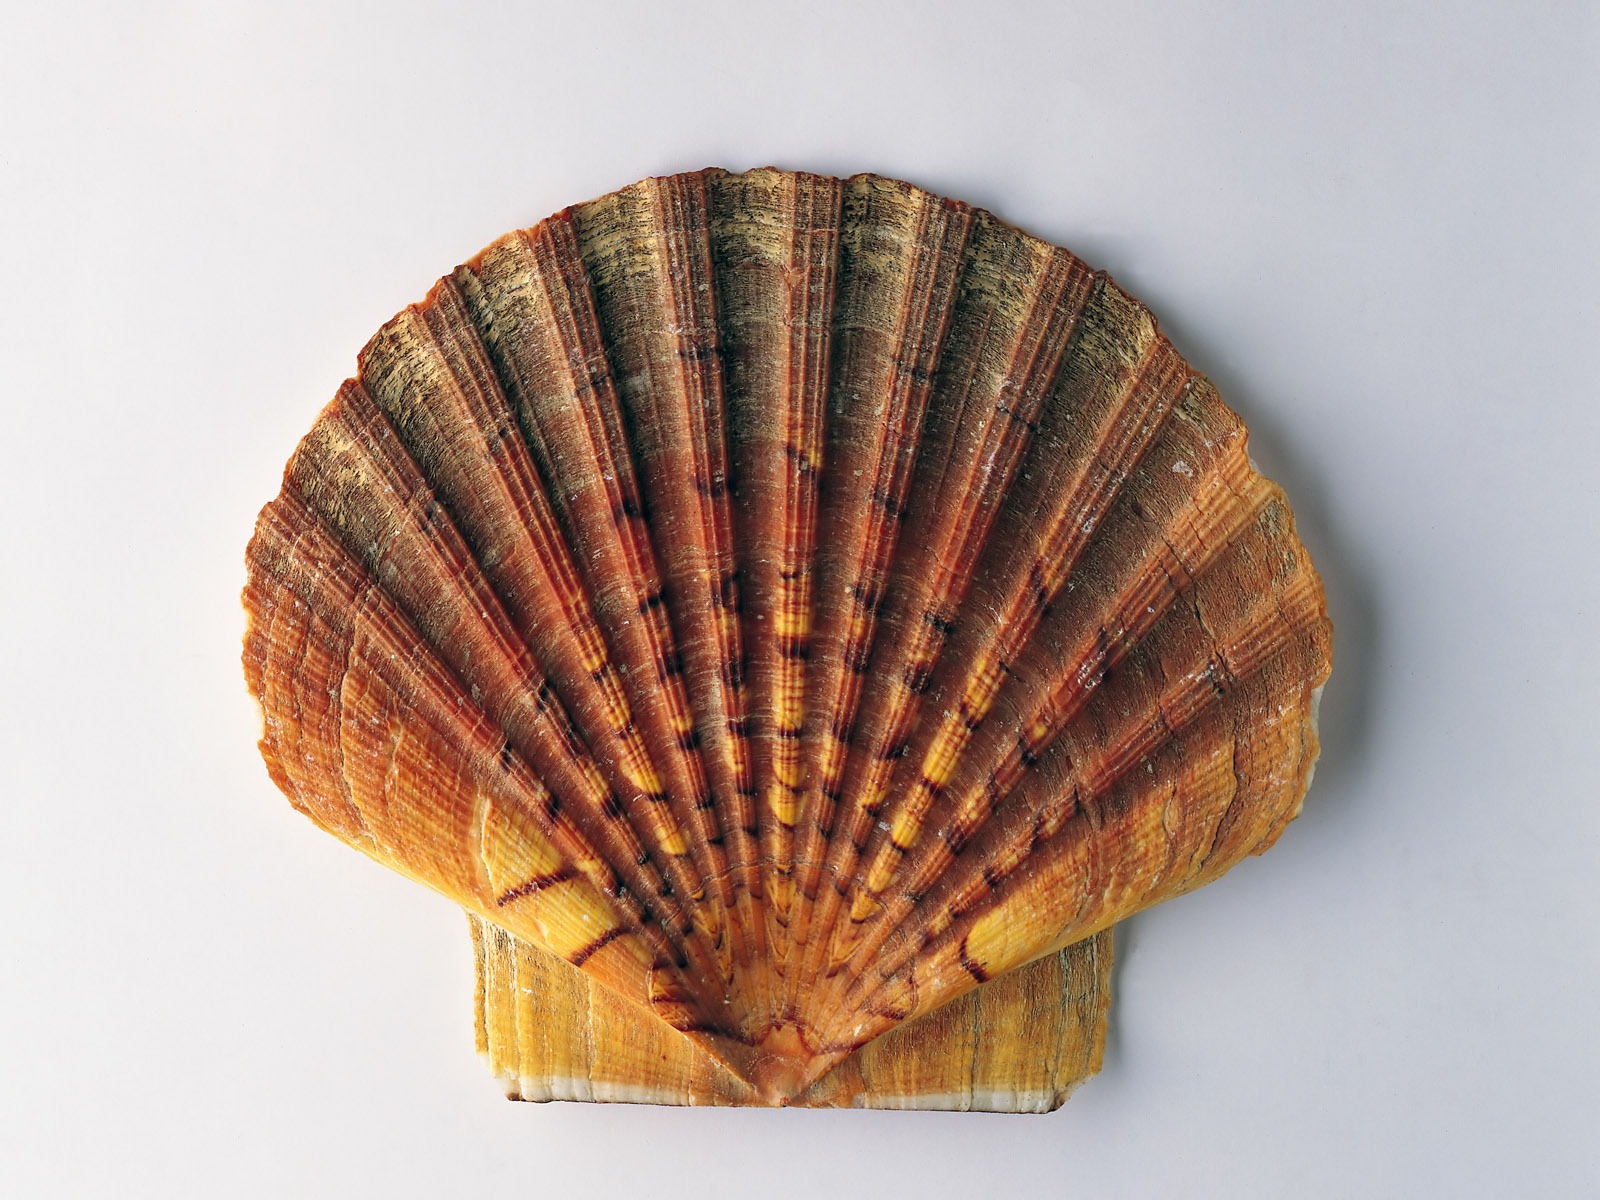 贝壳海螺壁纸专辑(一)14 - 1600x1200